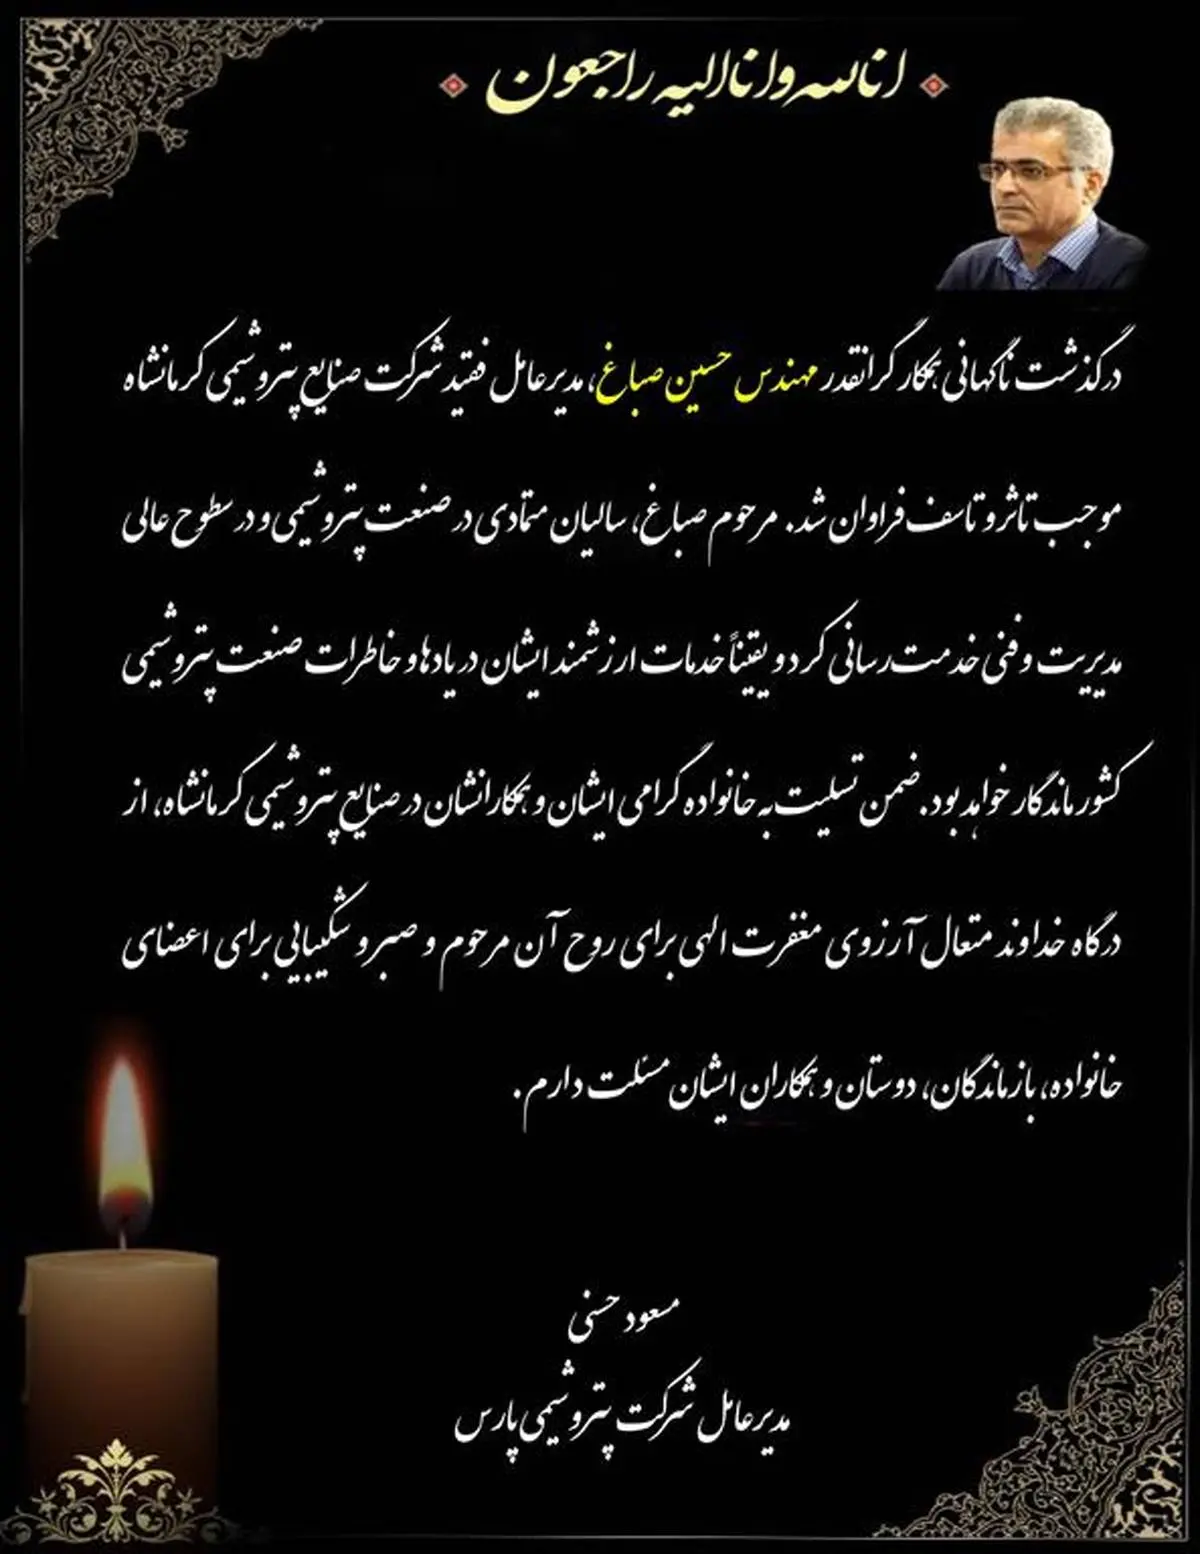 پیام تسلیت مدیرعامل شرکت پتروشیمی پارس به مناسبت درگذشتِ مهندس حسین صباغ